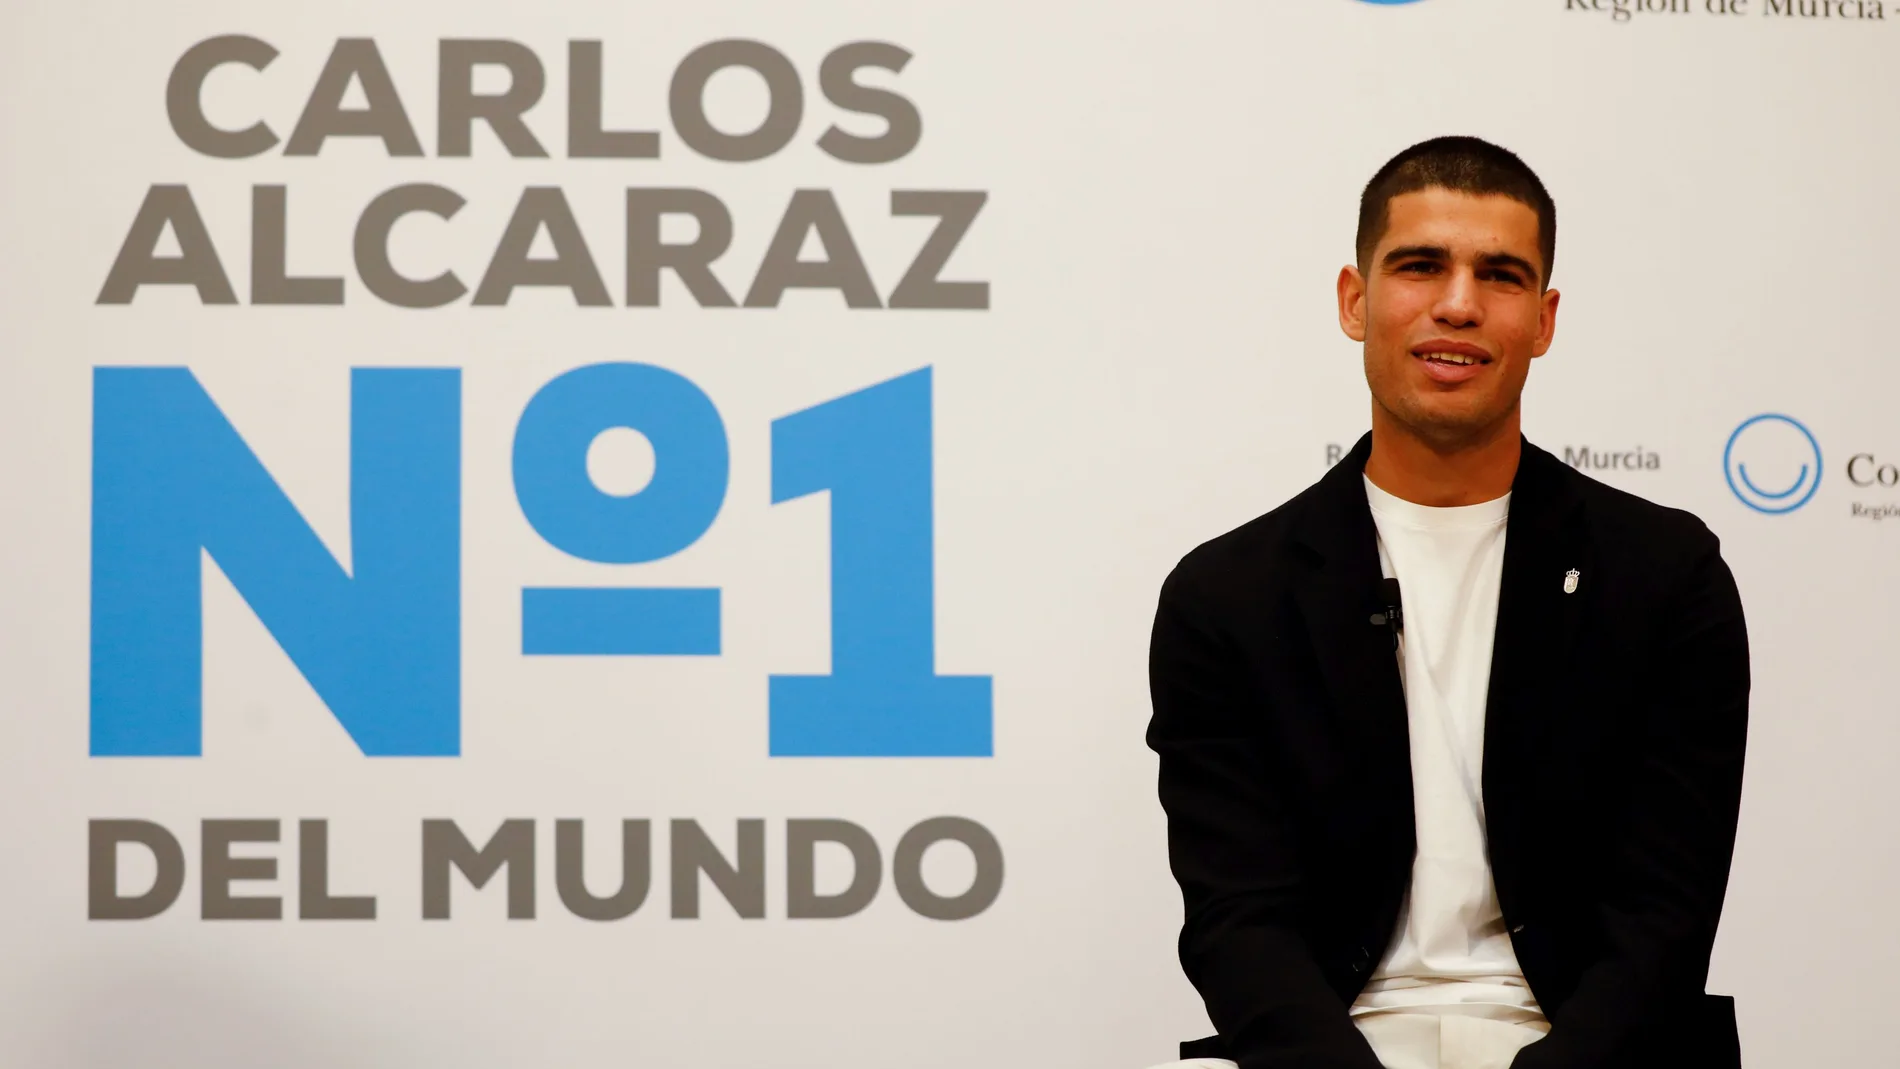 El tenista Carlos Alcaraz, hijo predilecto de Murcia